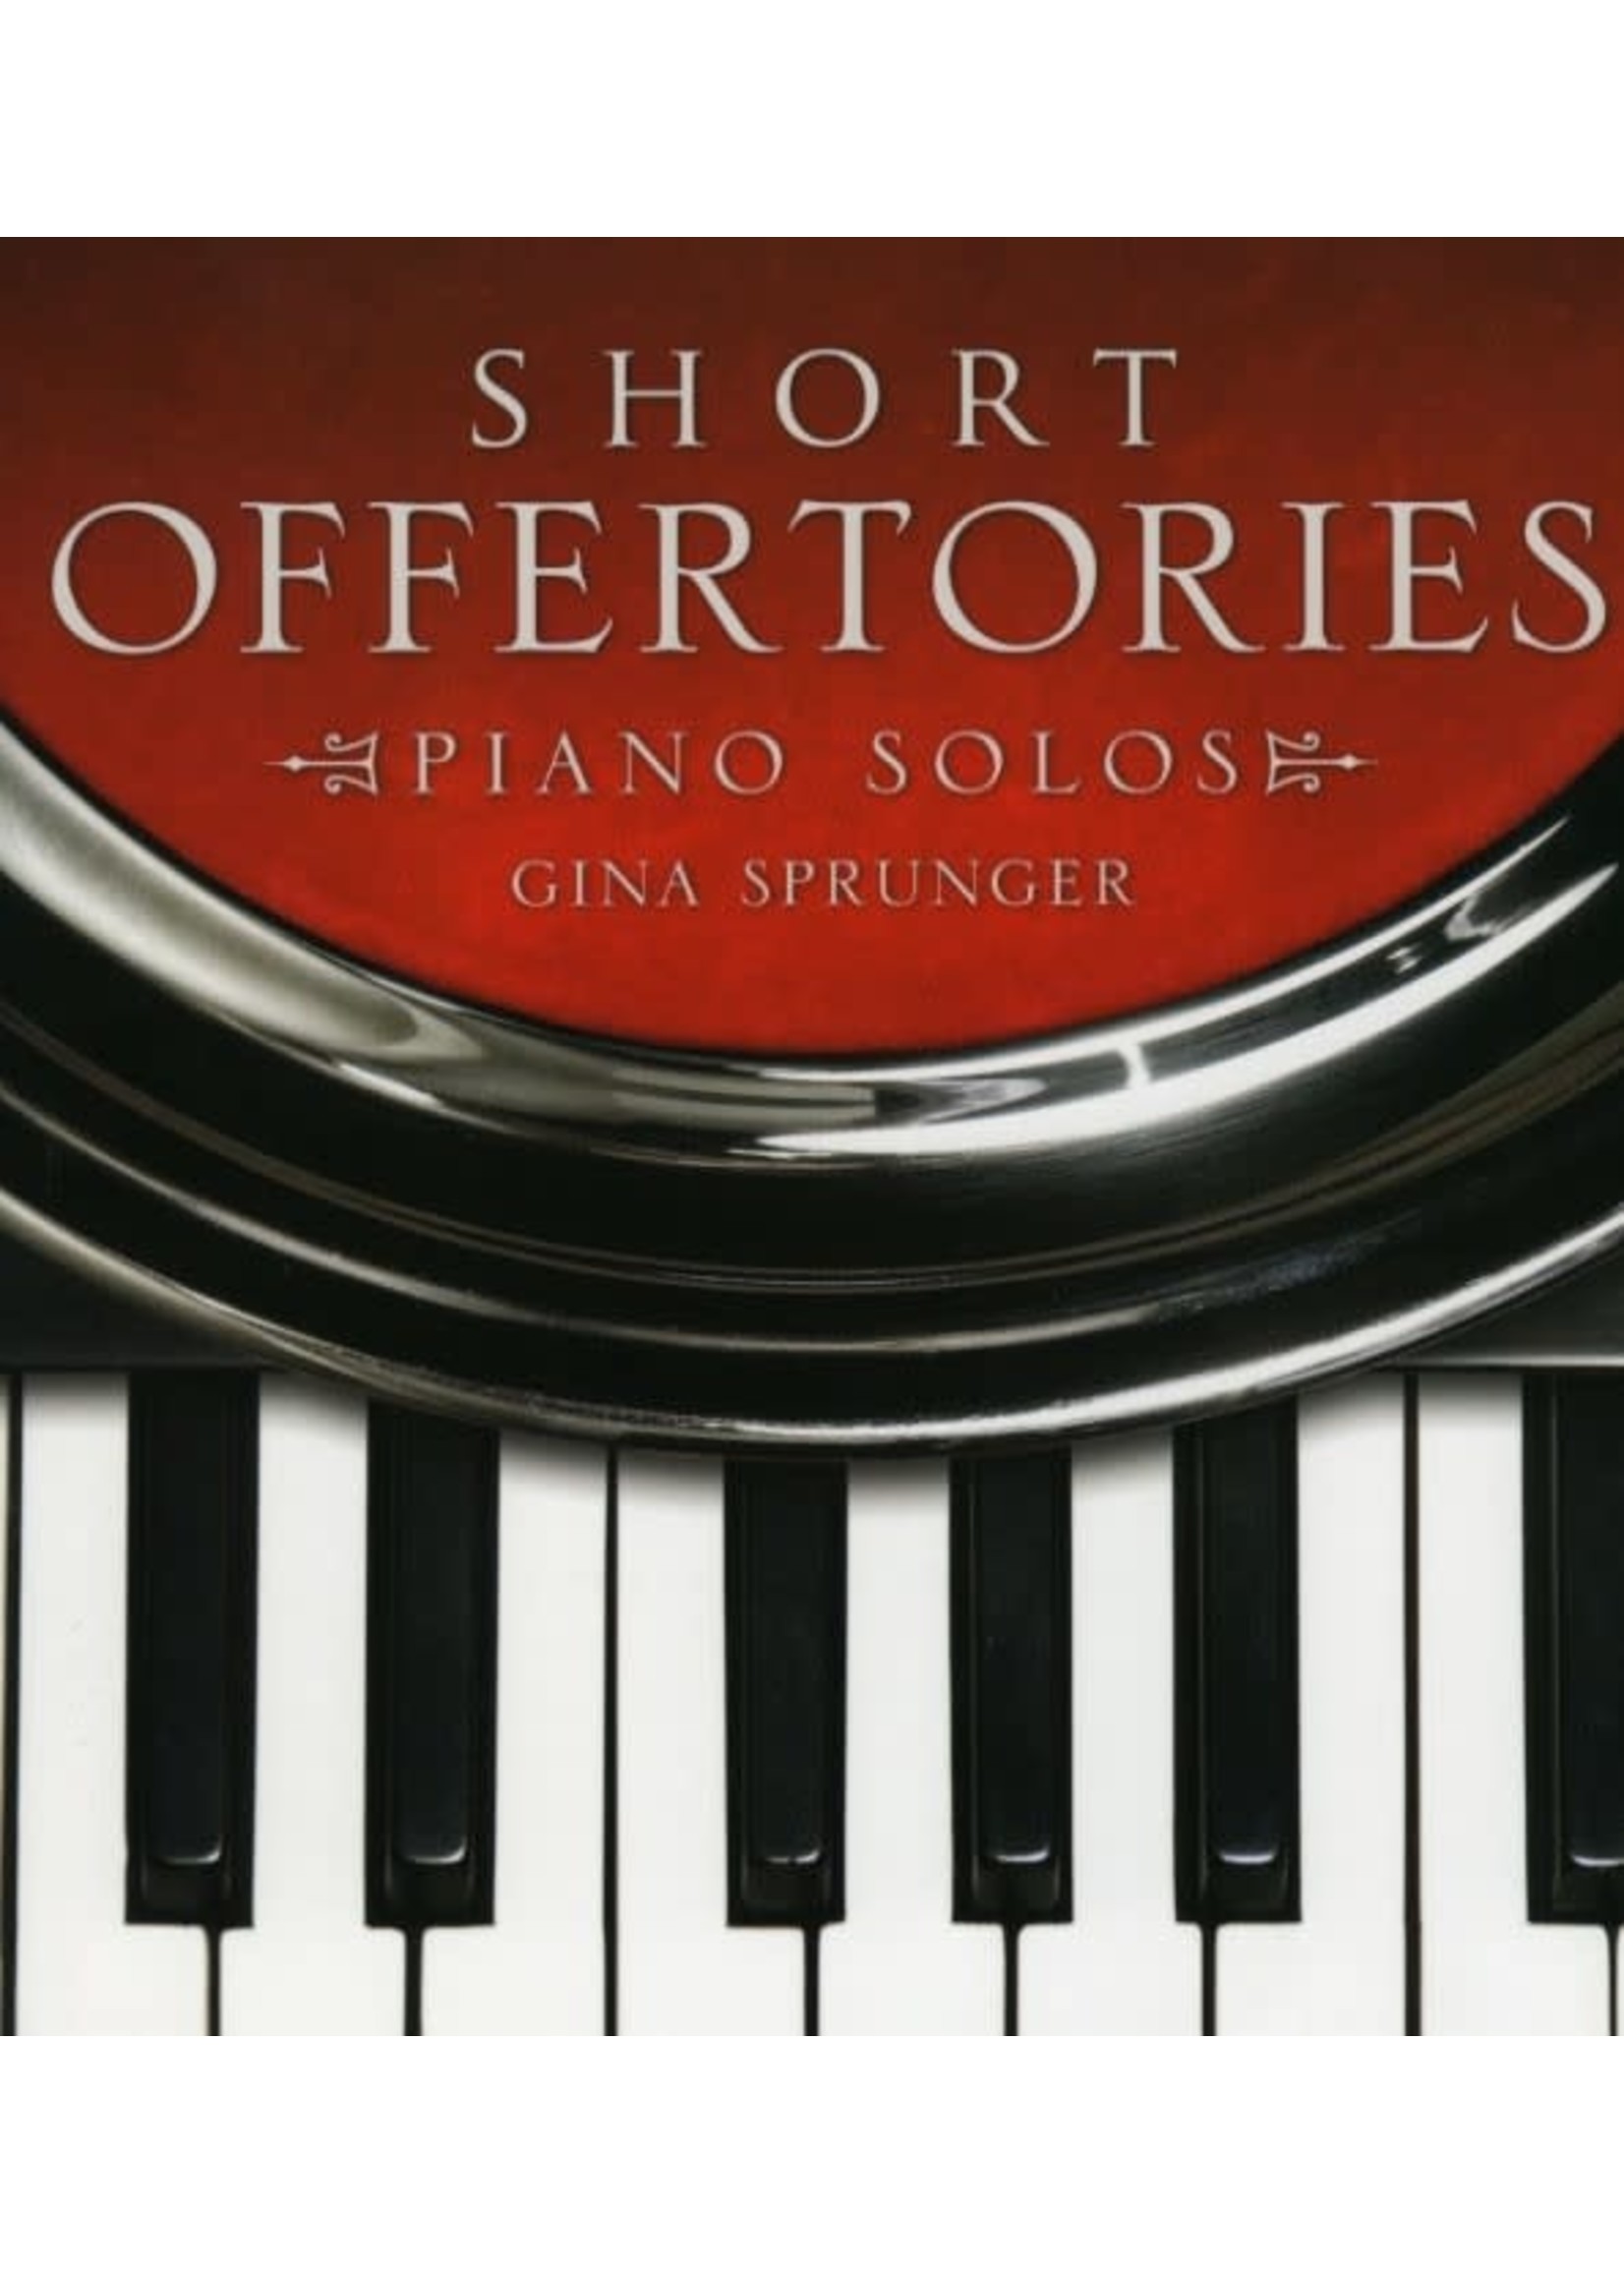 Short Offertories (Sprunger)